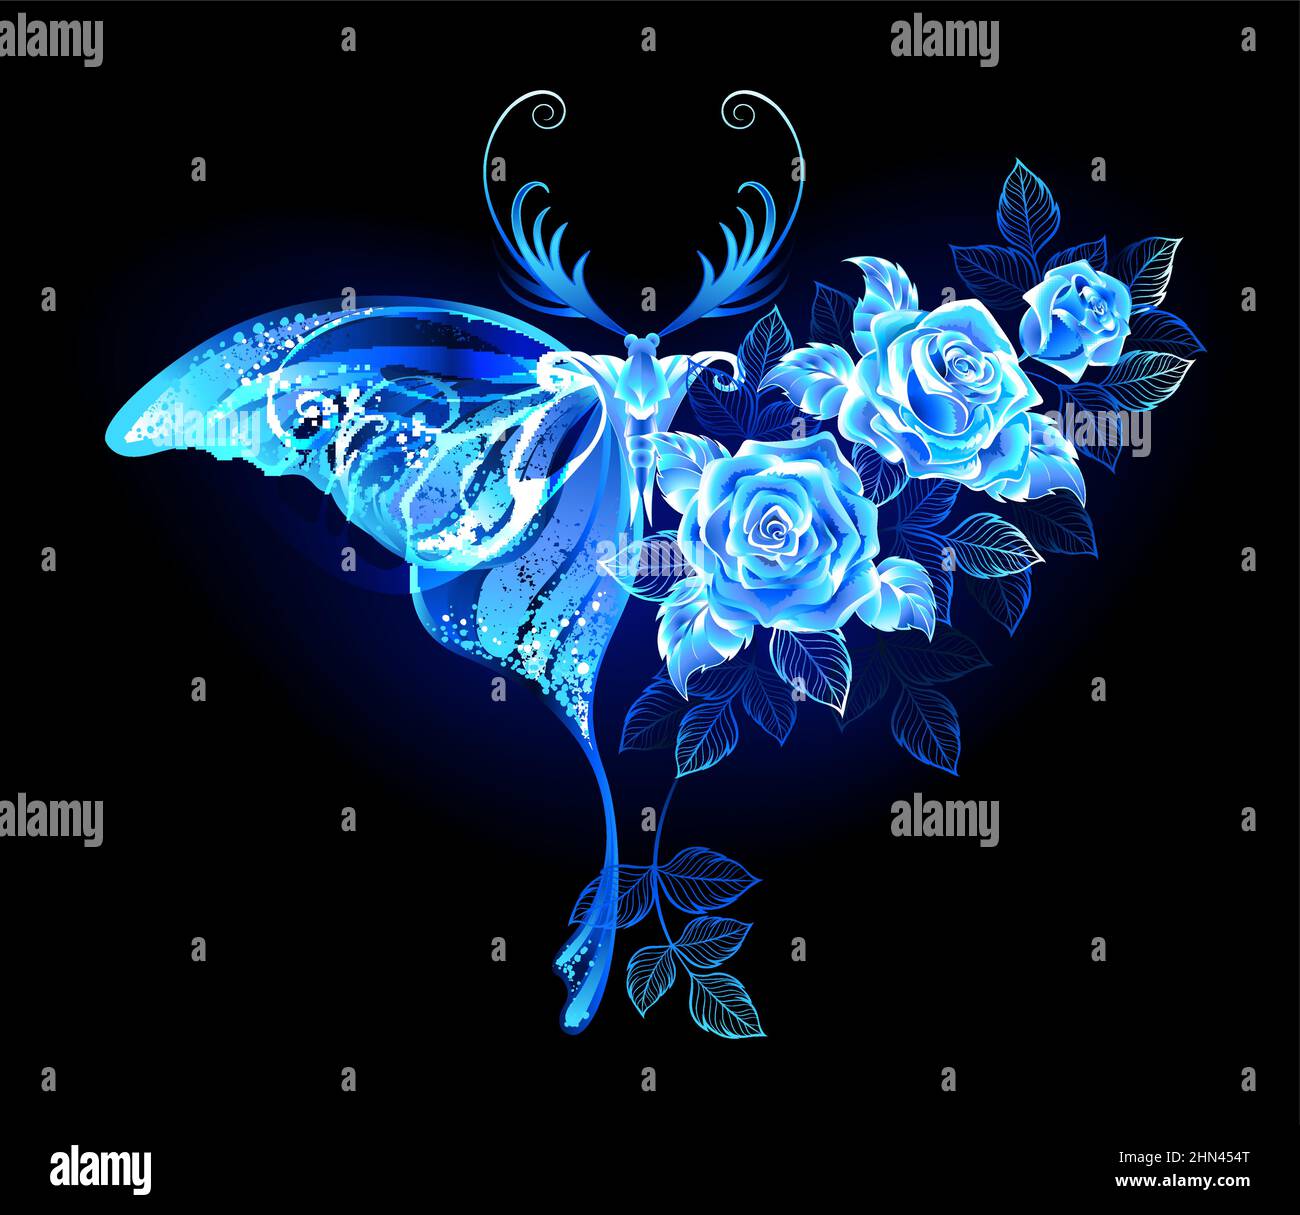 Luminoso, mágico, azul, floral, mariposa nocturna con ala decorada con rosas azules, floreciendo, lujosas, brillantes sobre fondo negro. Ilustración del Vector